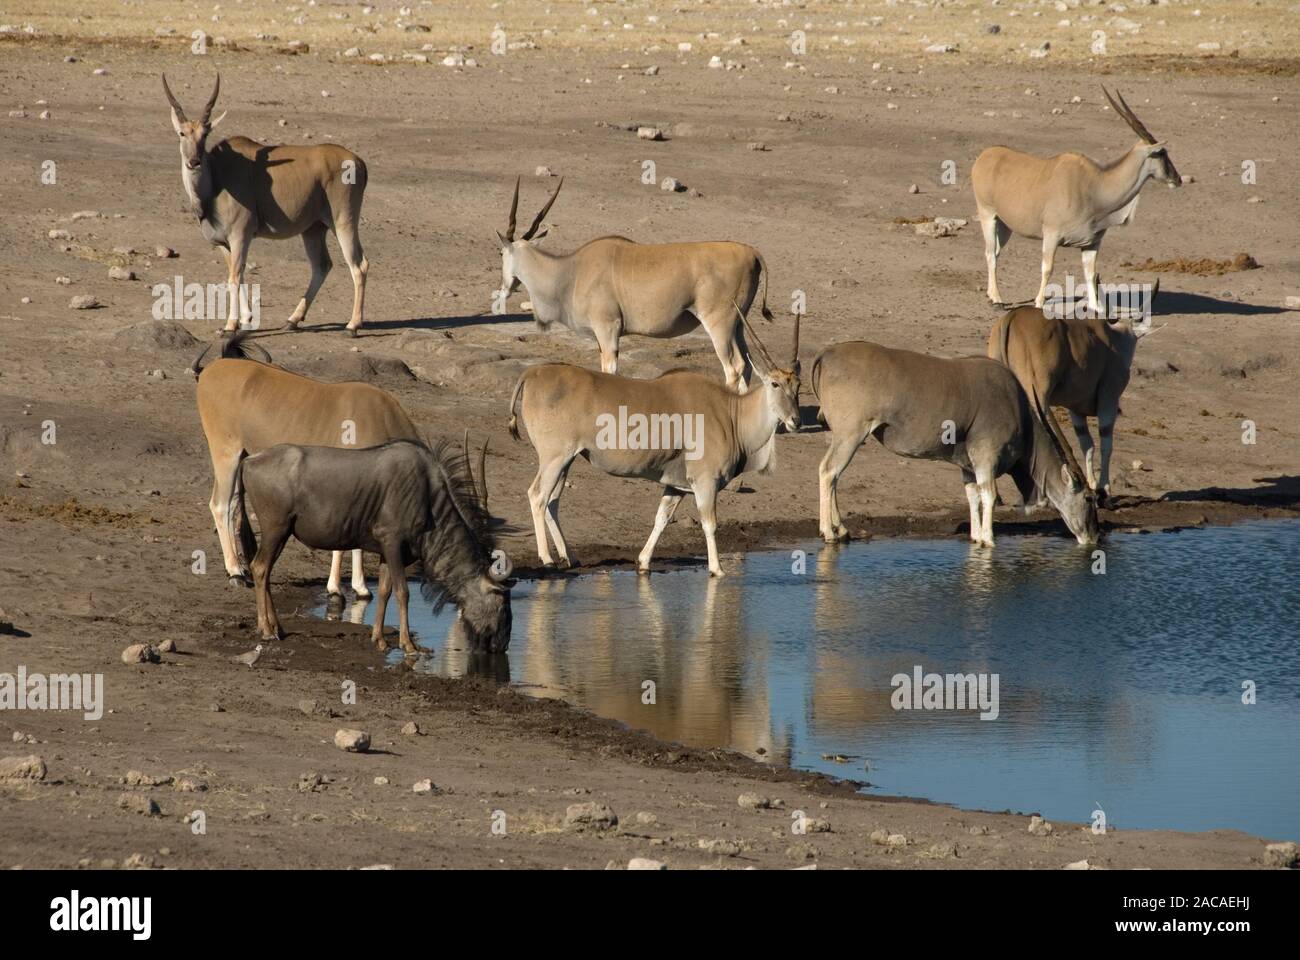 eland and wildebeest Stock Photo